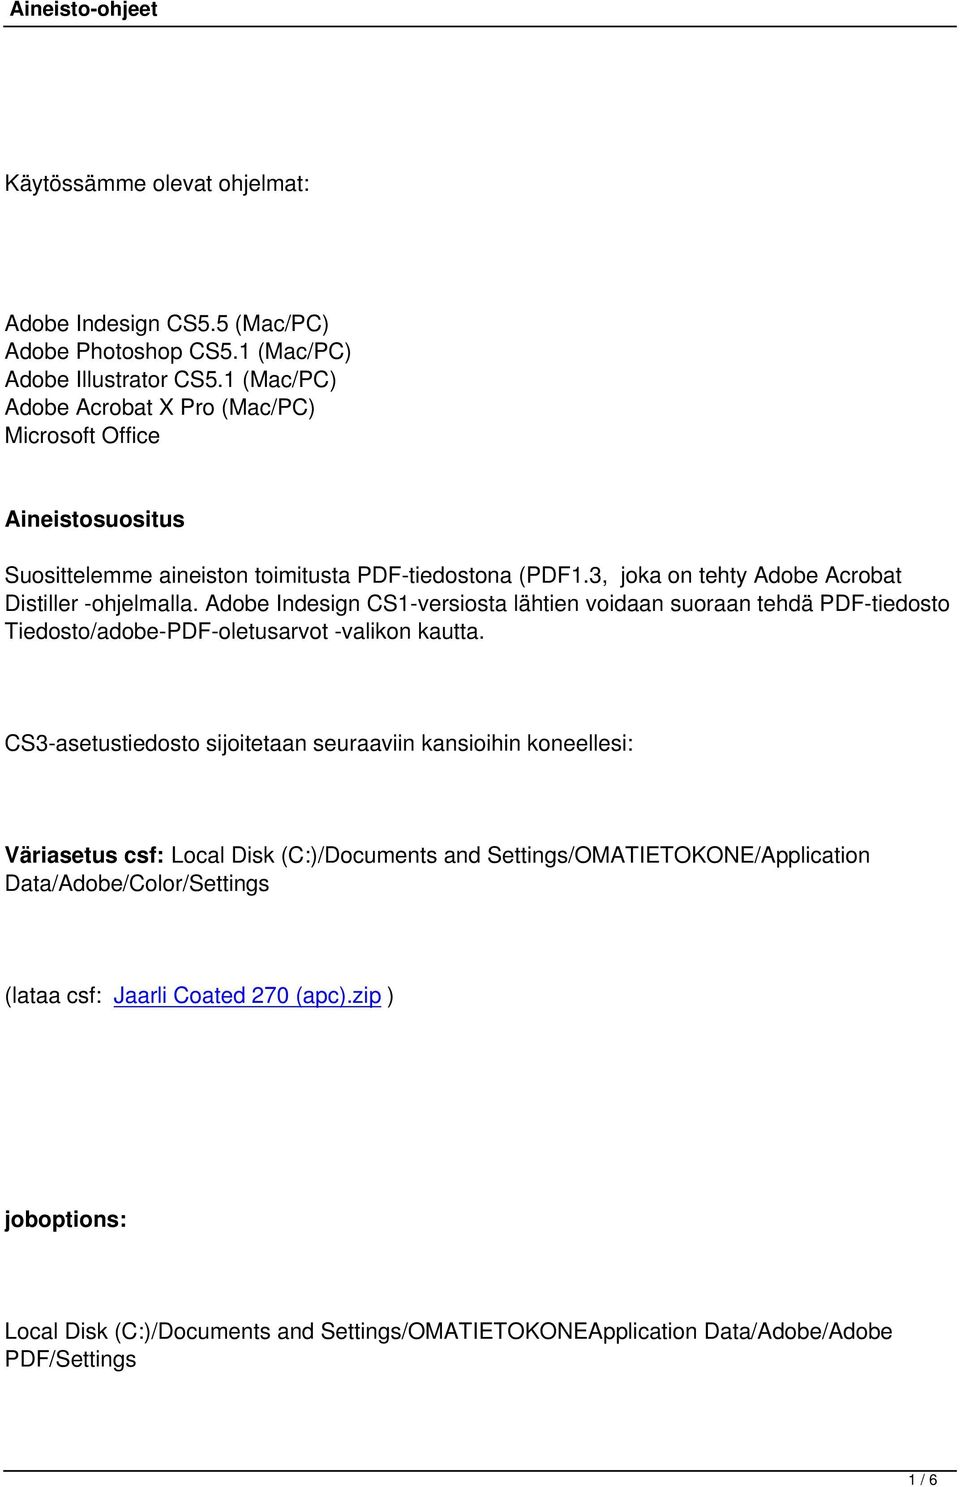 Adobe Indesign CS1-versiosta lähtien voidaan suoraan tehdä PDF-tiedosto Tiedosto/adobe-PDF-oletusarvot -valikon kautta.